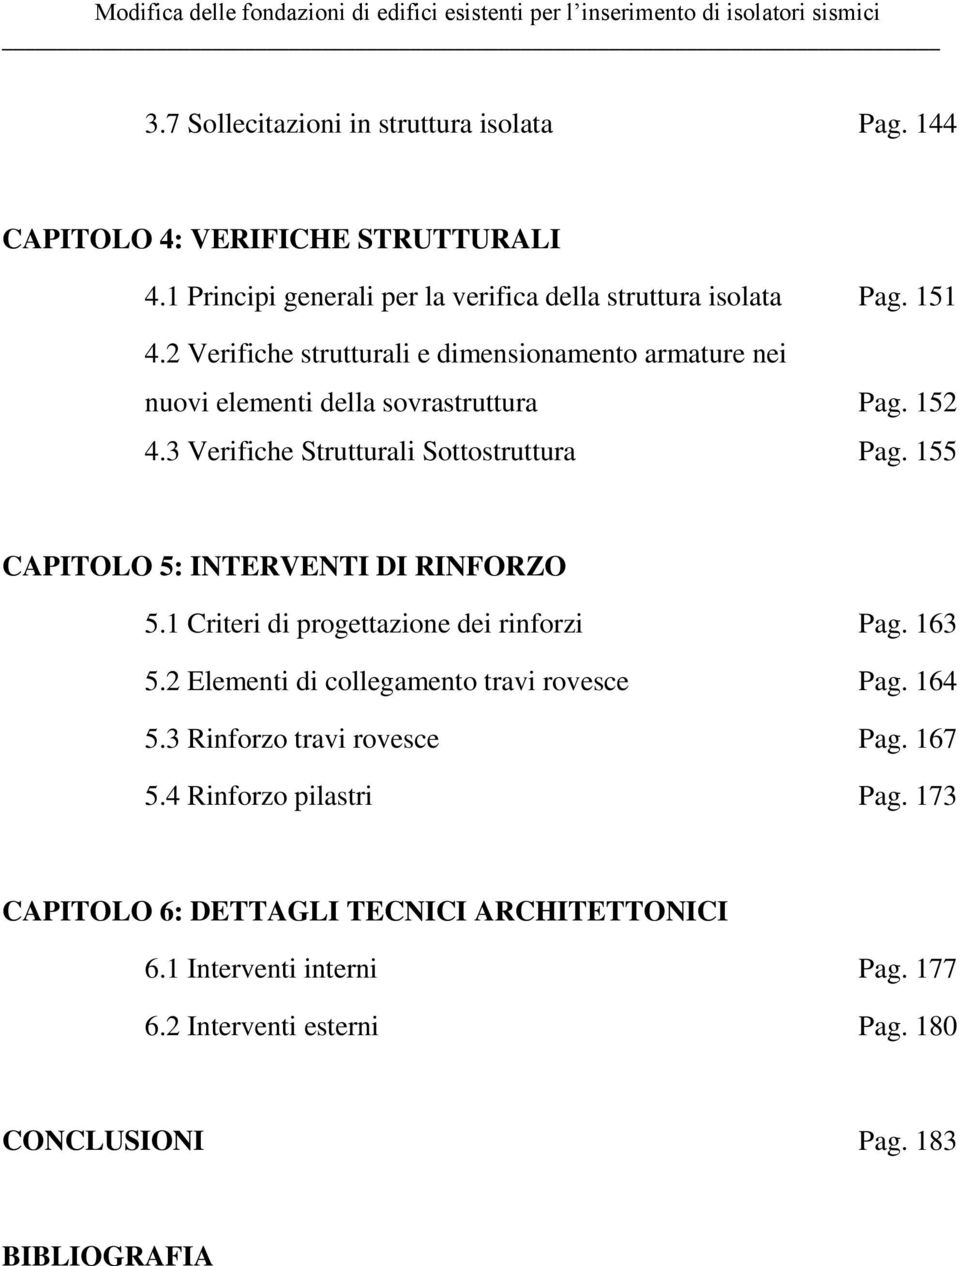 155 CAPITOLO 5: INTERVENTI DI RINFORZO 5.1 Criteri di progettazione dei rinforzi Pag. 163 5.2 Elementi di collegamento travi rovesce Pag. 164 5.